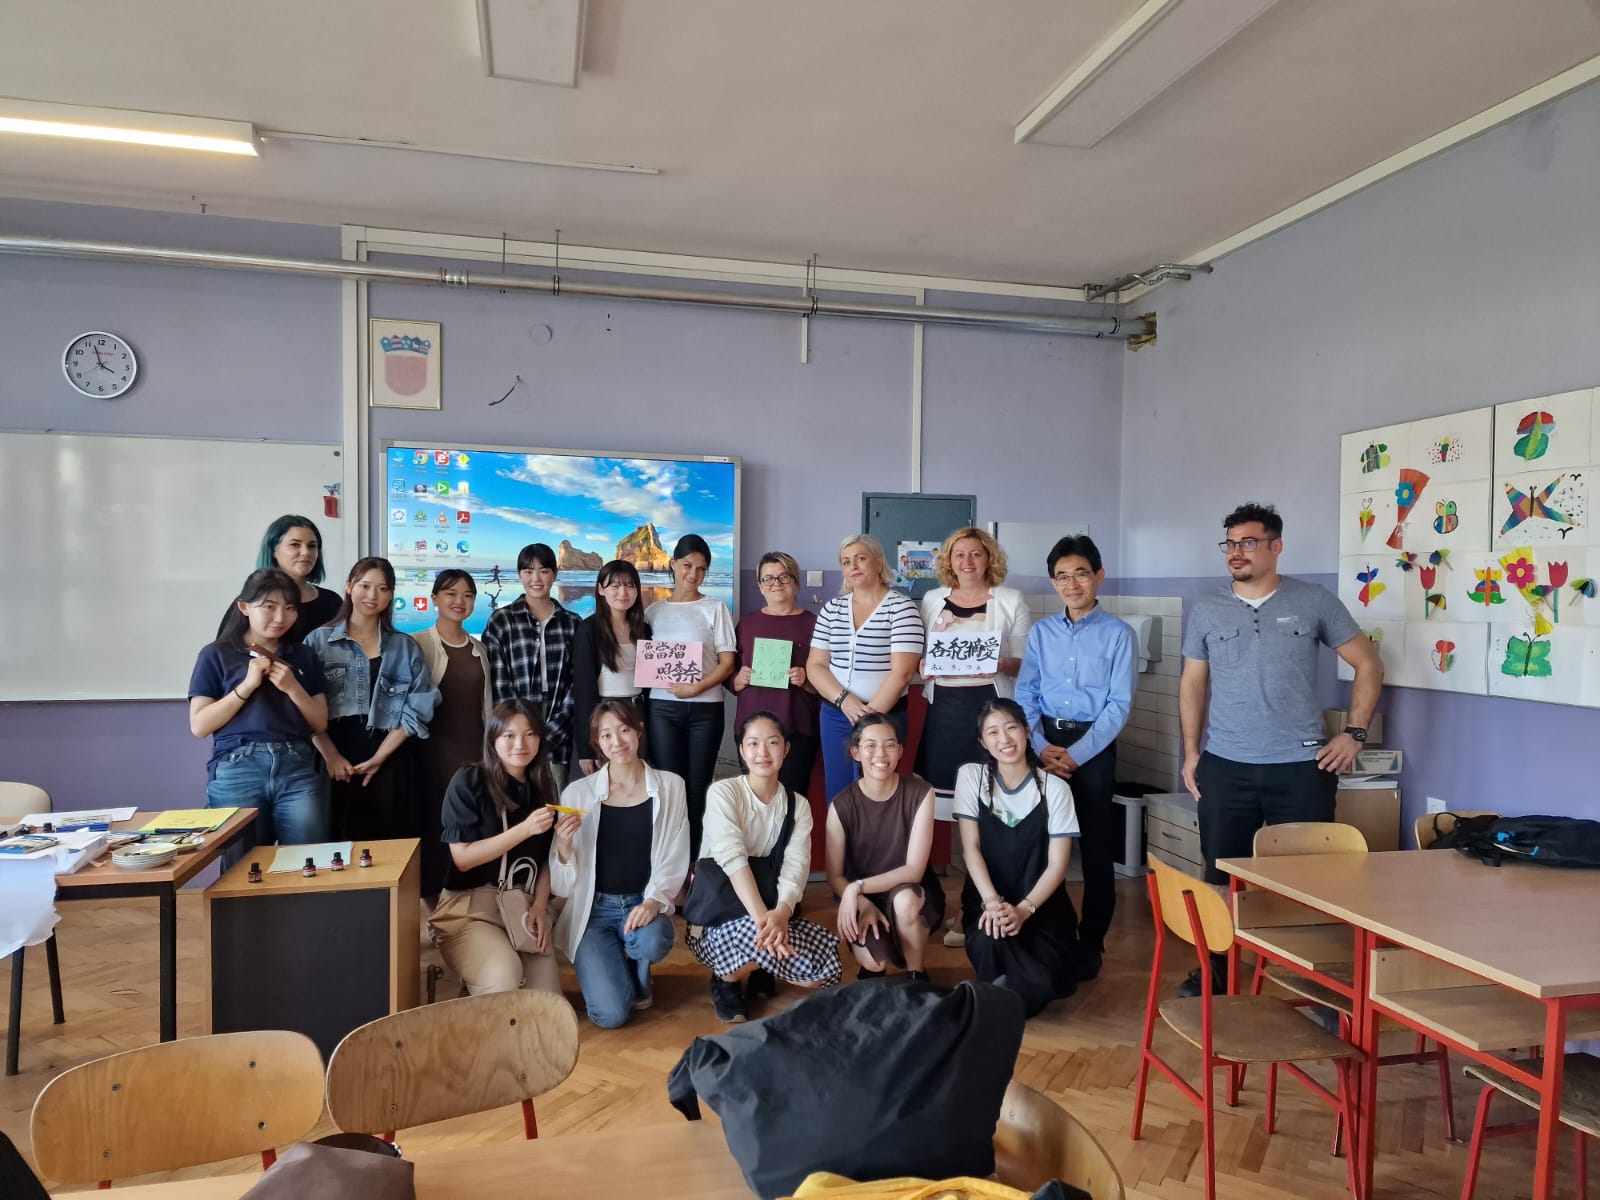 Tijekom svog studijskog putovanja, profesor Takafumi Nakajima, 10 studentica s Gakushuin Women's College Tokyo i gospođa Masumi Shimooka Štiglić posjetili su Osnovnu školu Mate Lovraka Petrinja. 